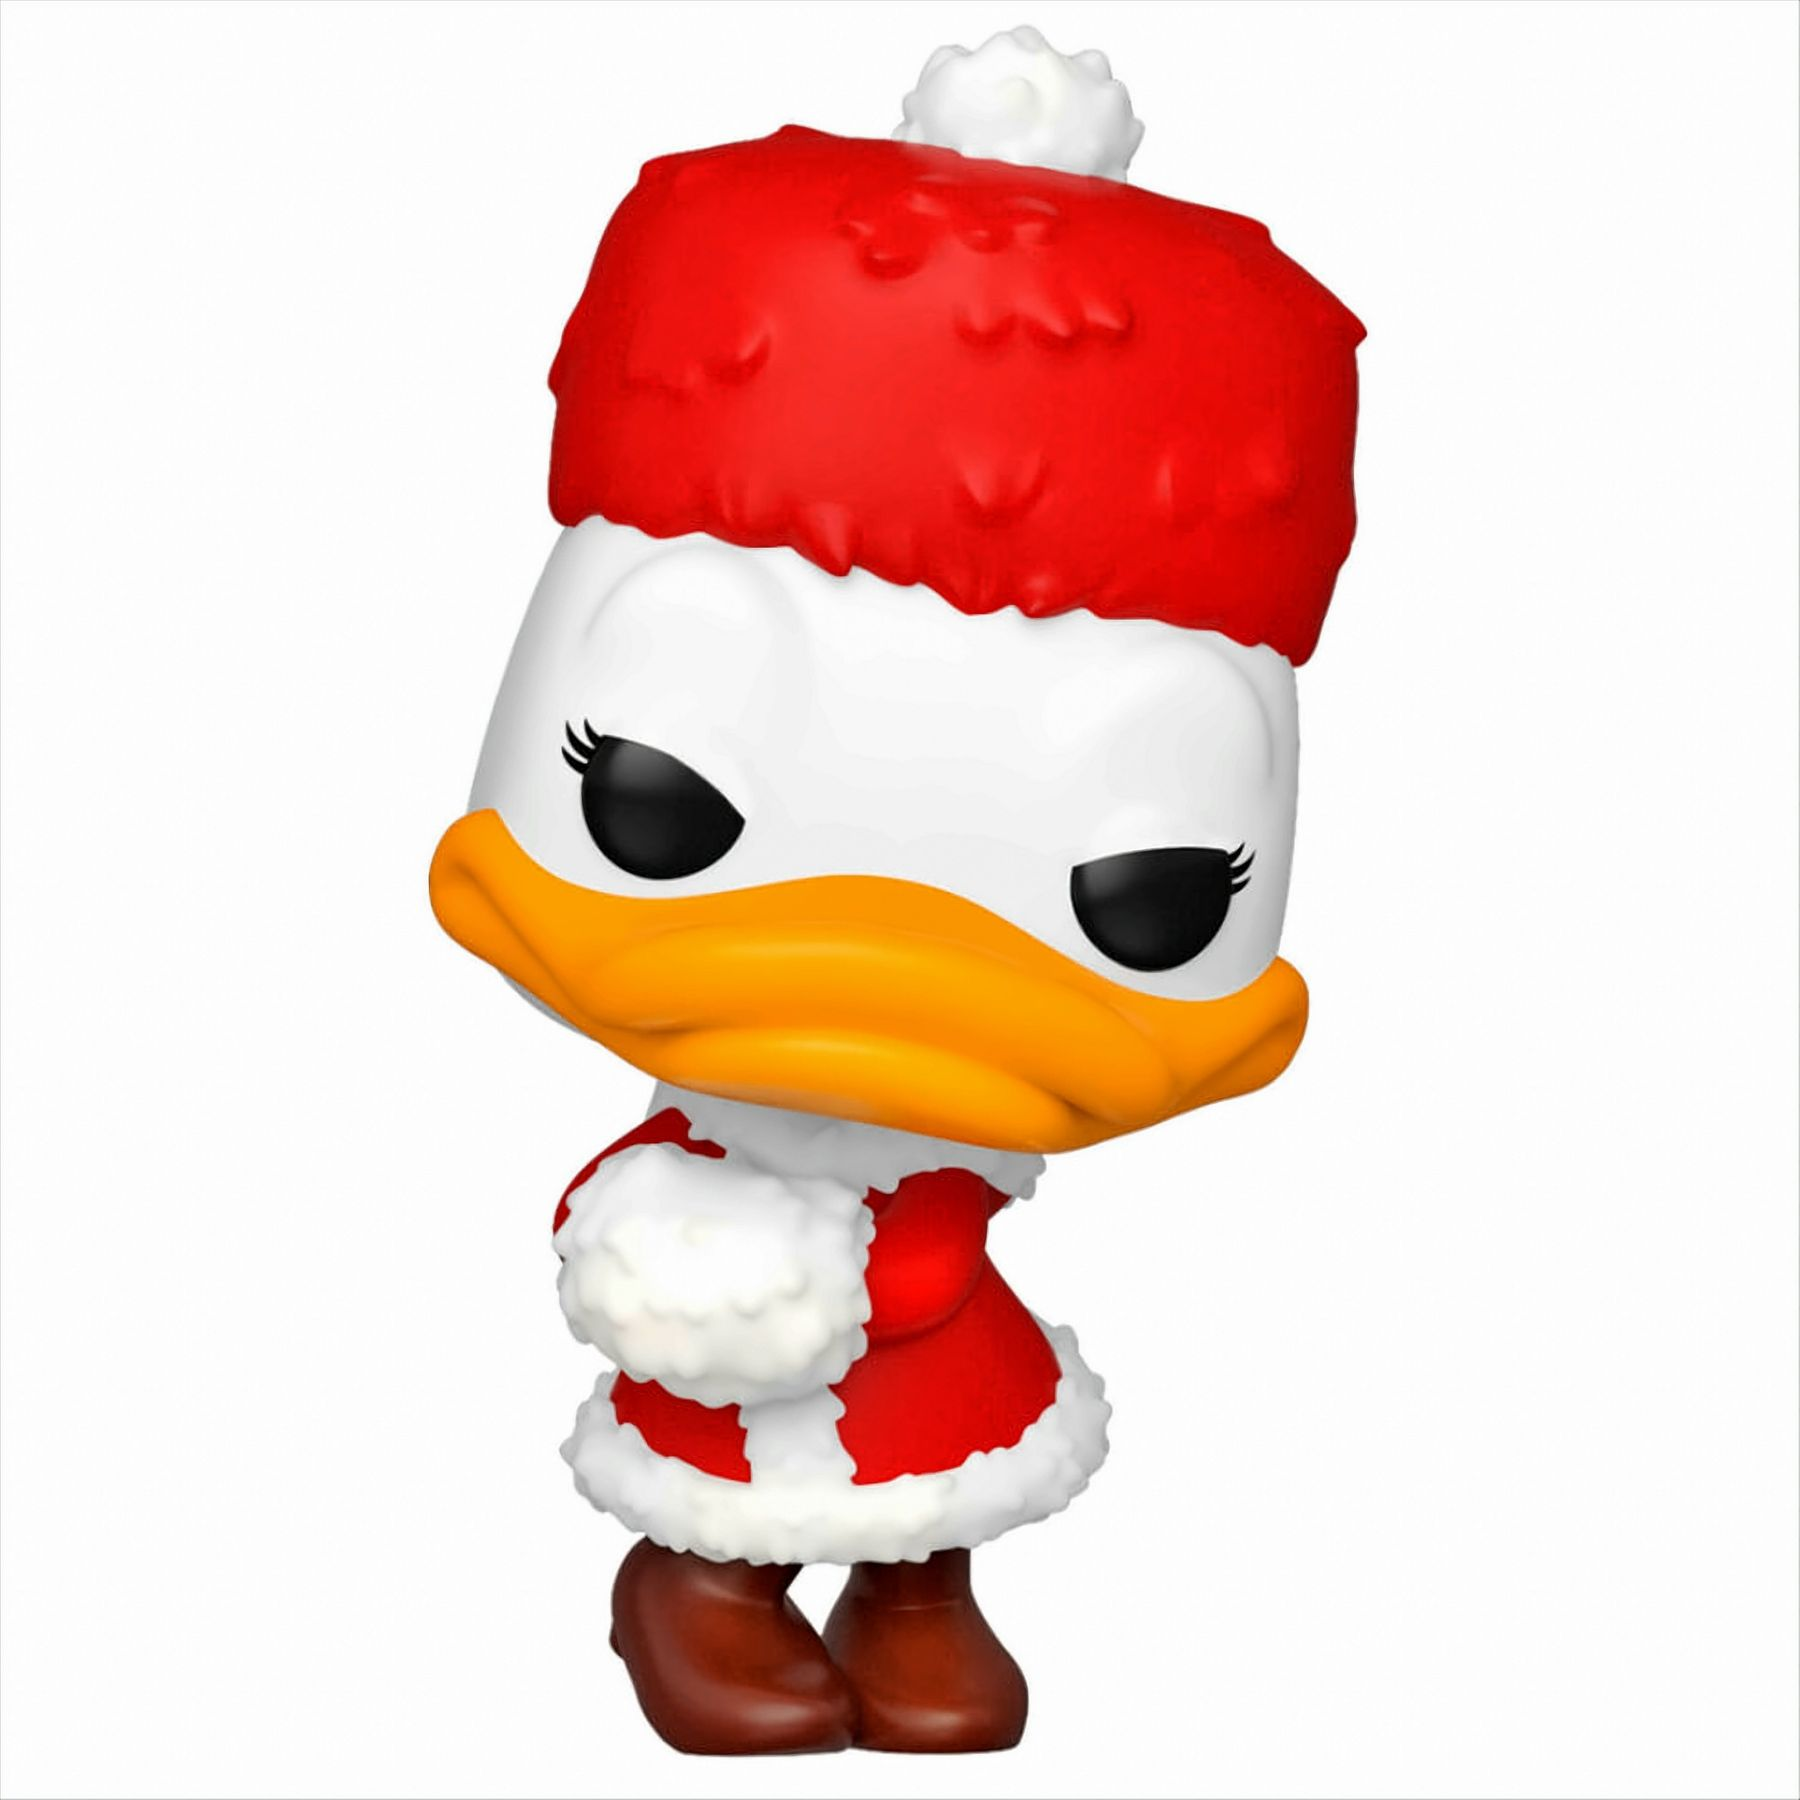 - Duck Holiday/Weihnachten - POP Disney Daisy